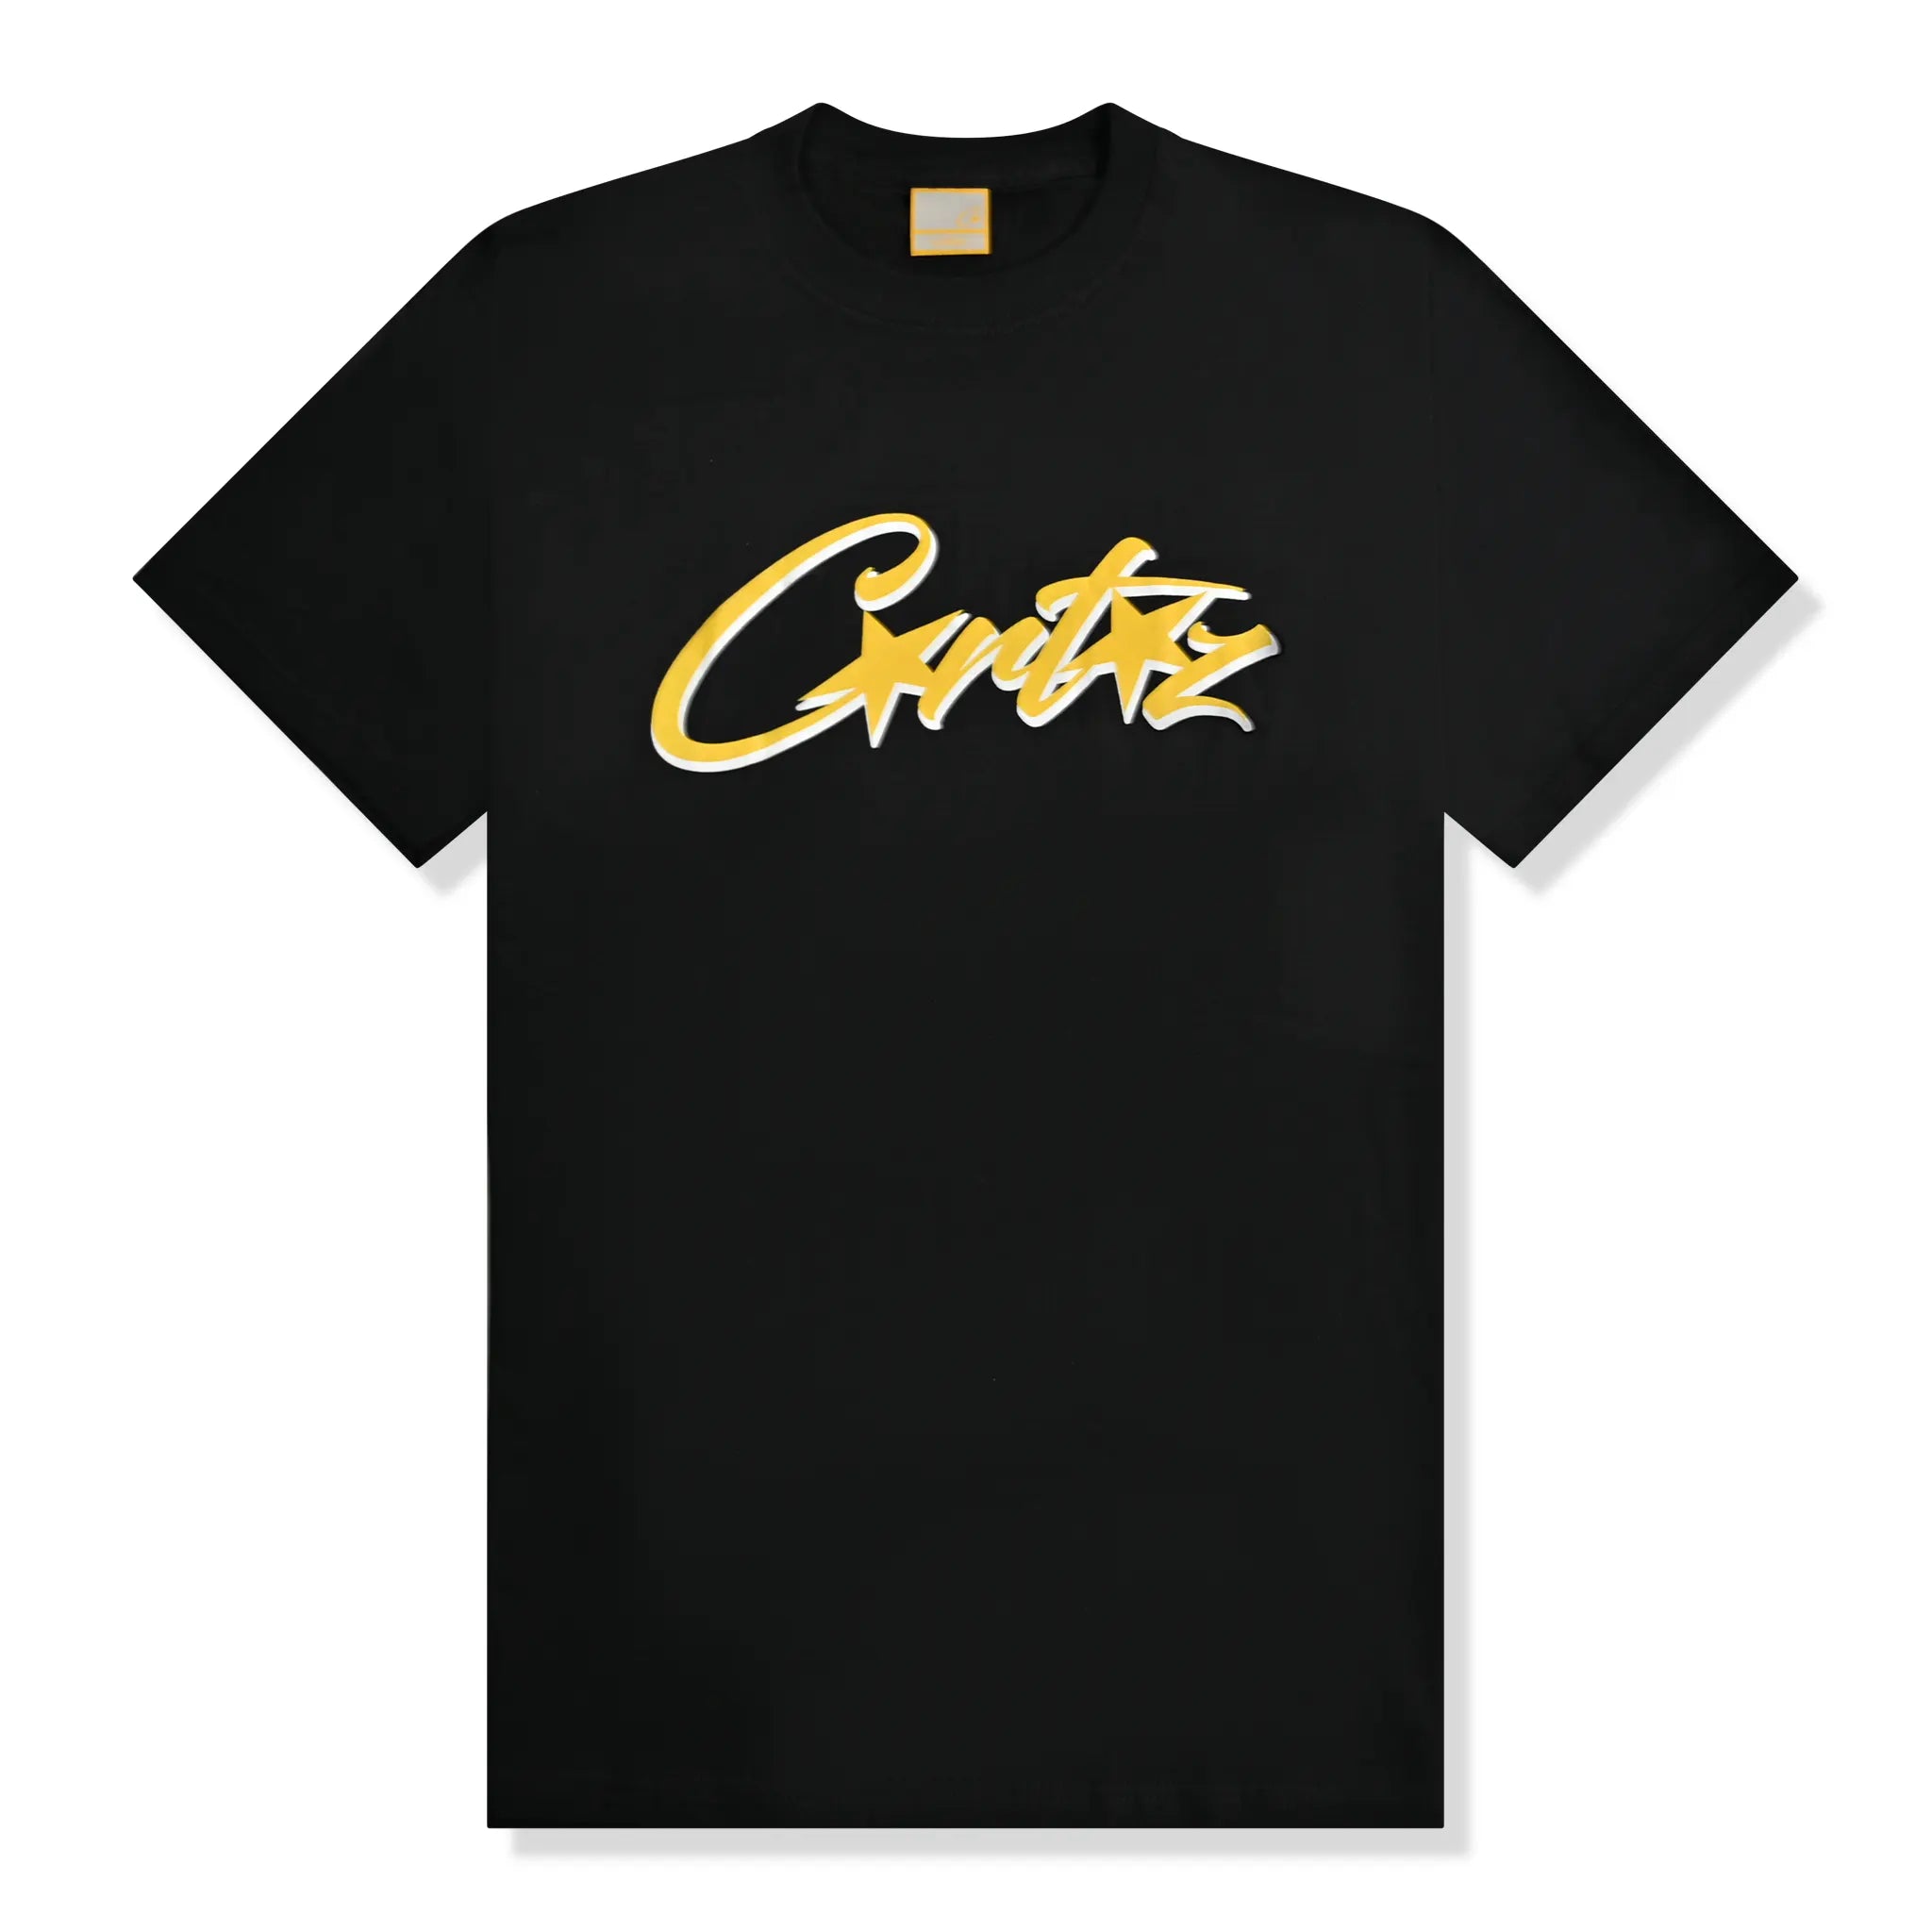 Front view of Corteiz Allstarz Black Gold T Shirt